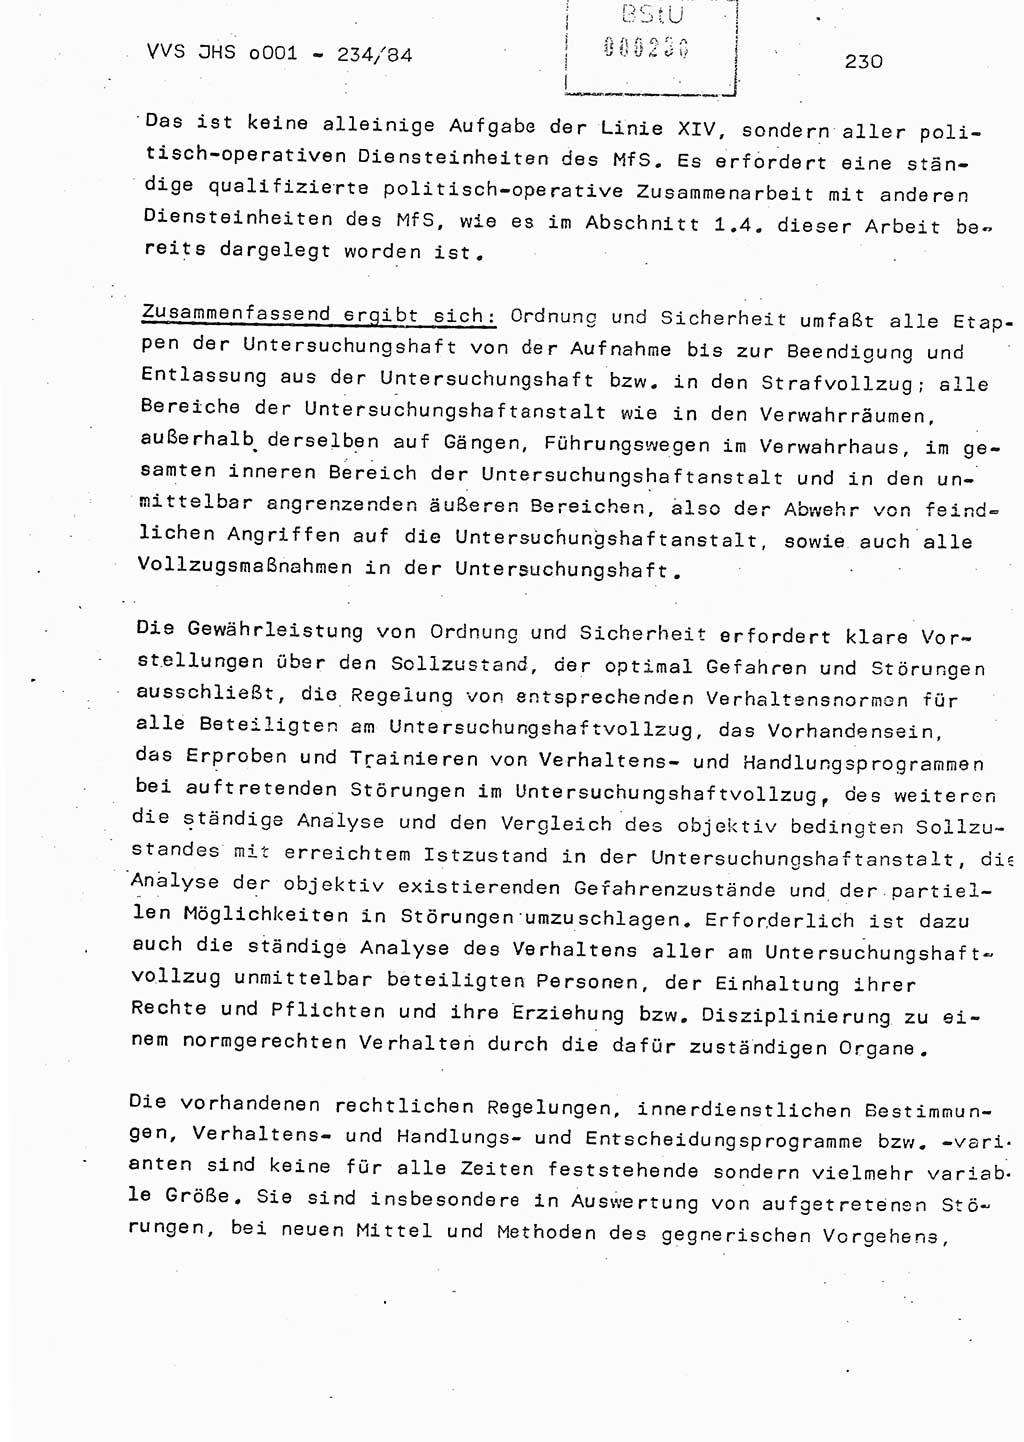 Dissertation Oberst Siegfried Rataizick (Abt. ⅩⅣ), Oberstleutnant Volkmar Heinz (Abt. ⅩⅣ), Oberstleutnant Werner Stein (HA Ⅸ), Hauptmann Heinz Conrad (JHS), Ministerium für Staatssicherheit (MfS) [Deutsche Demokratische Republik (DDR)], Juristische Hochschule (JHS), Vertrauliche Verschlußsache (VVS) o001-234/84, Potsdam 1984, Seite 230 (Diss. MfS DDR JHS VVS o001-234/84 1984, S. 230)